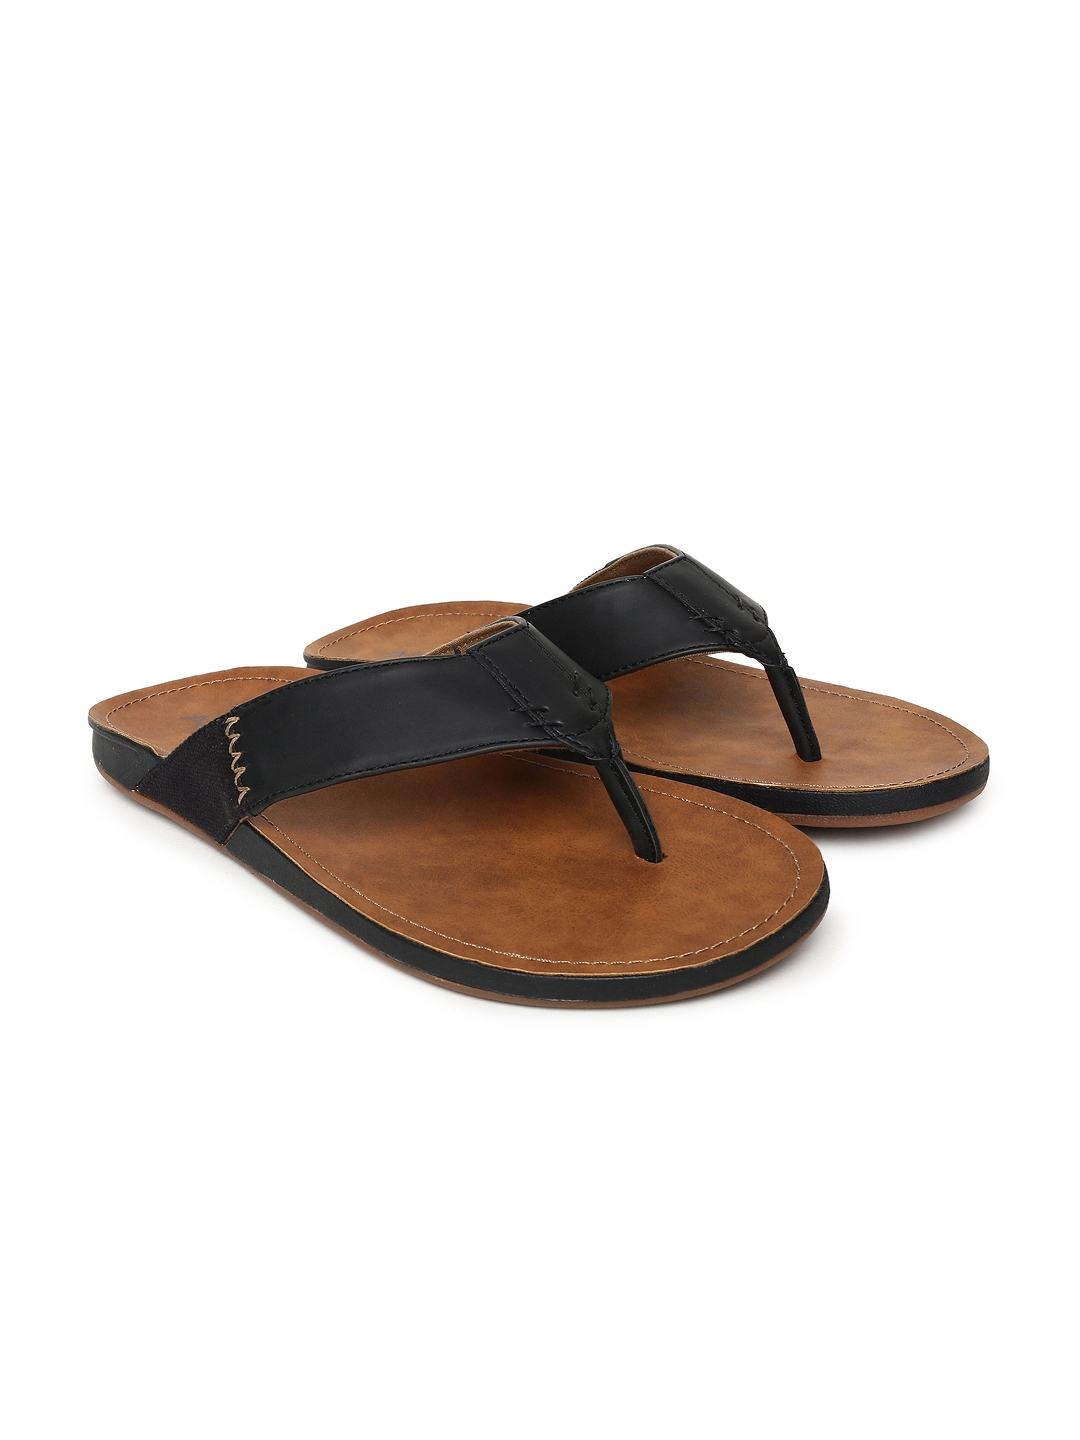 Buy ALDO Men Black Leather Sandals - Sandals for Men 2153860 | Myntra